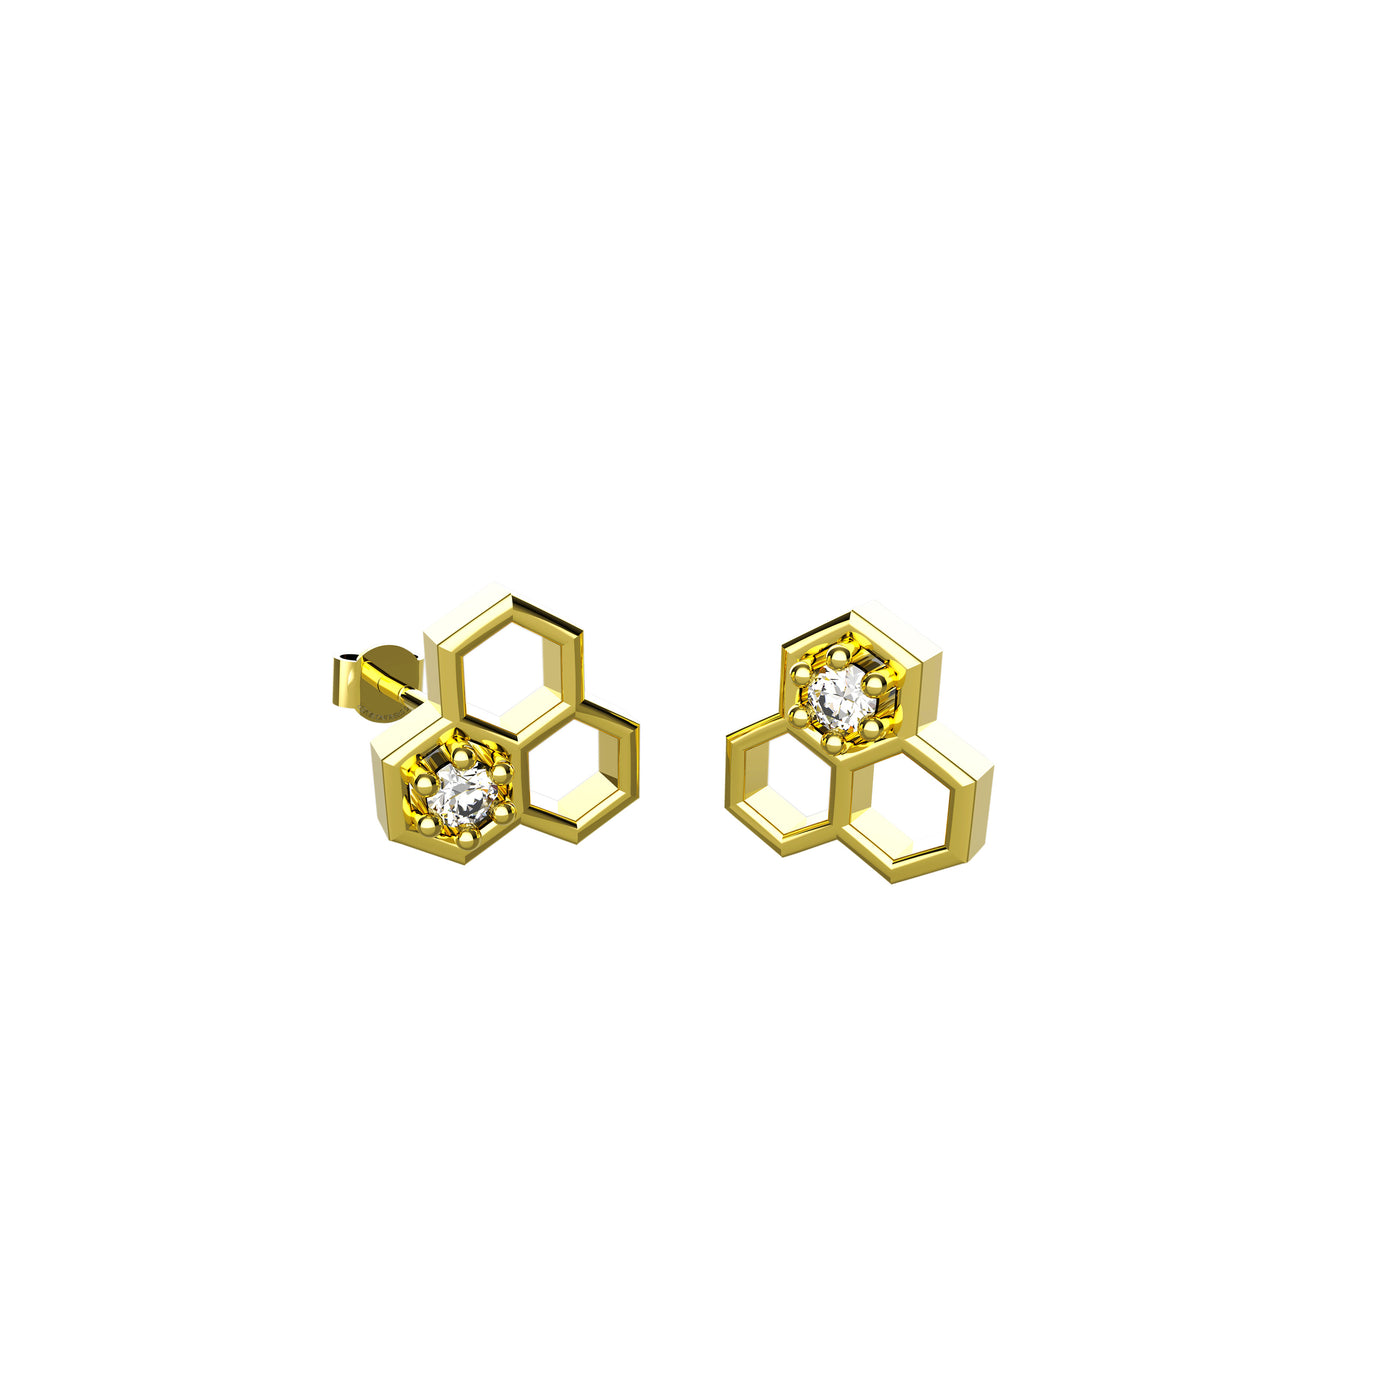 Hexagonal Stud In clear Ear Jewelry